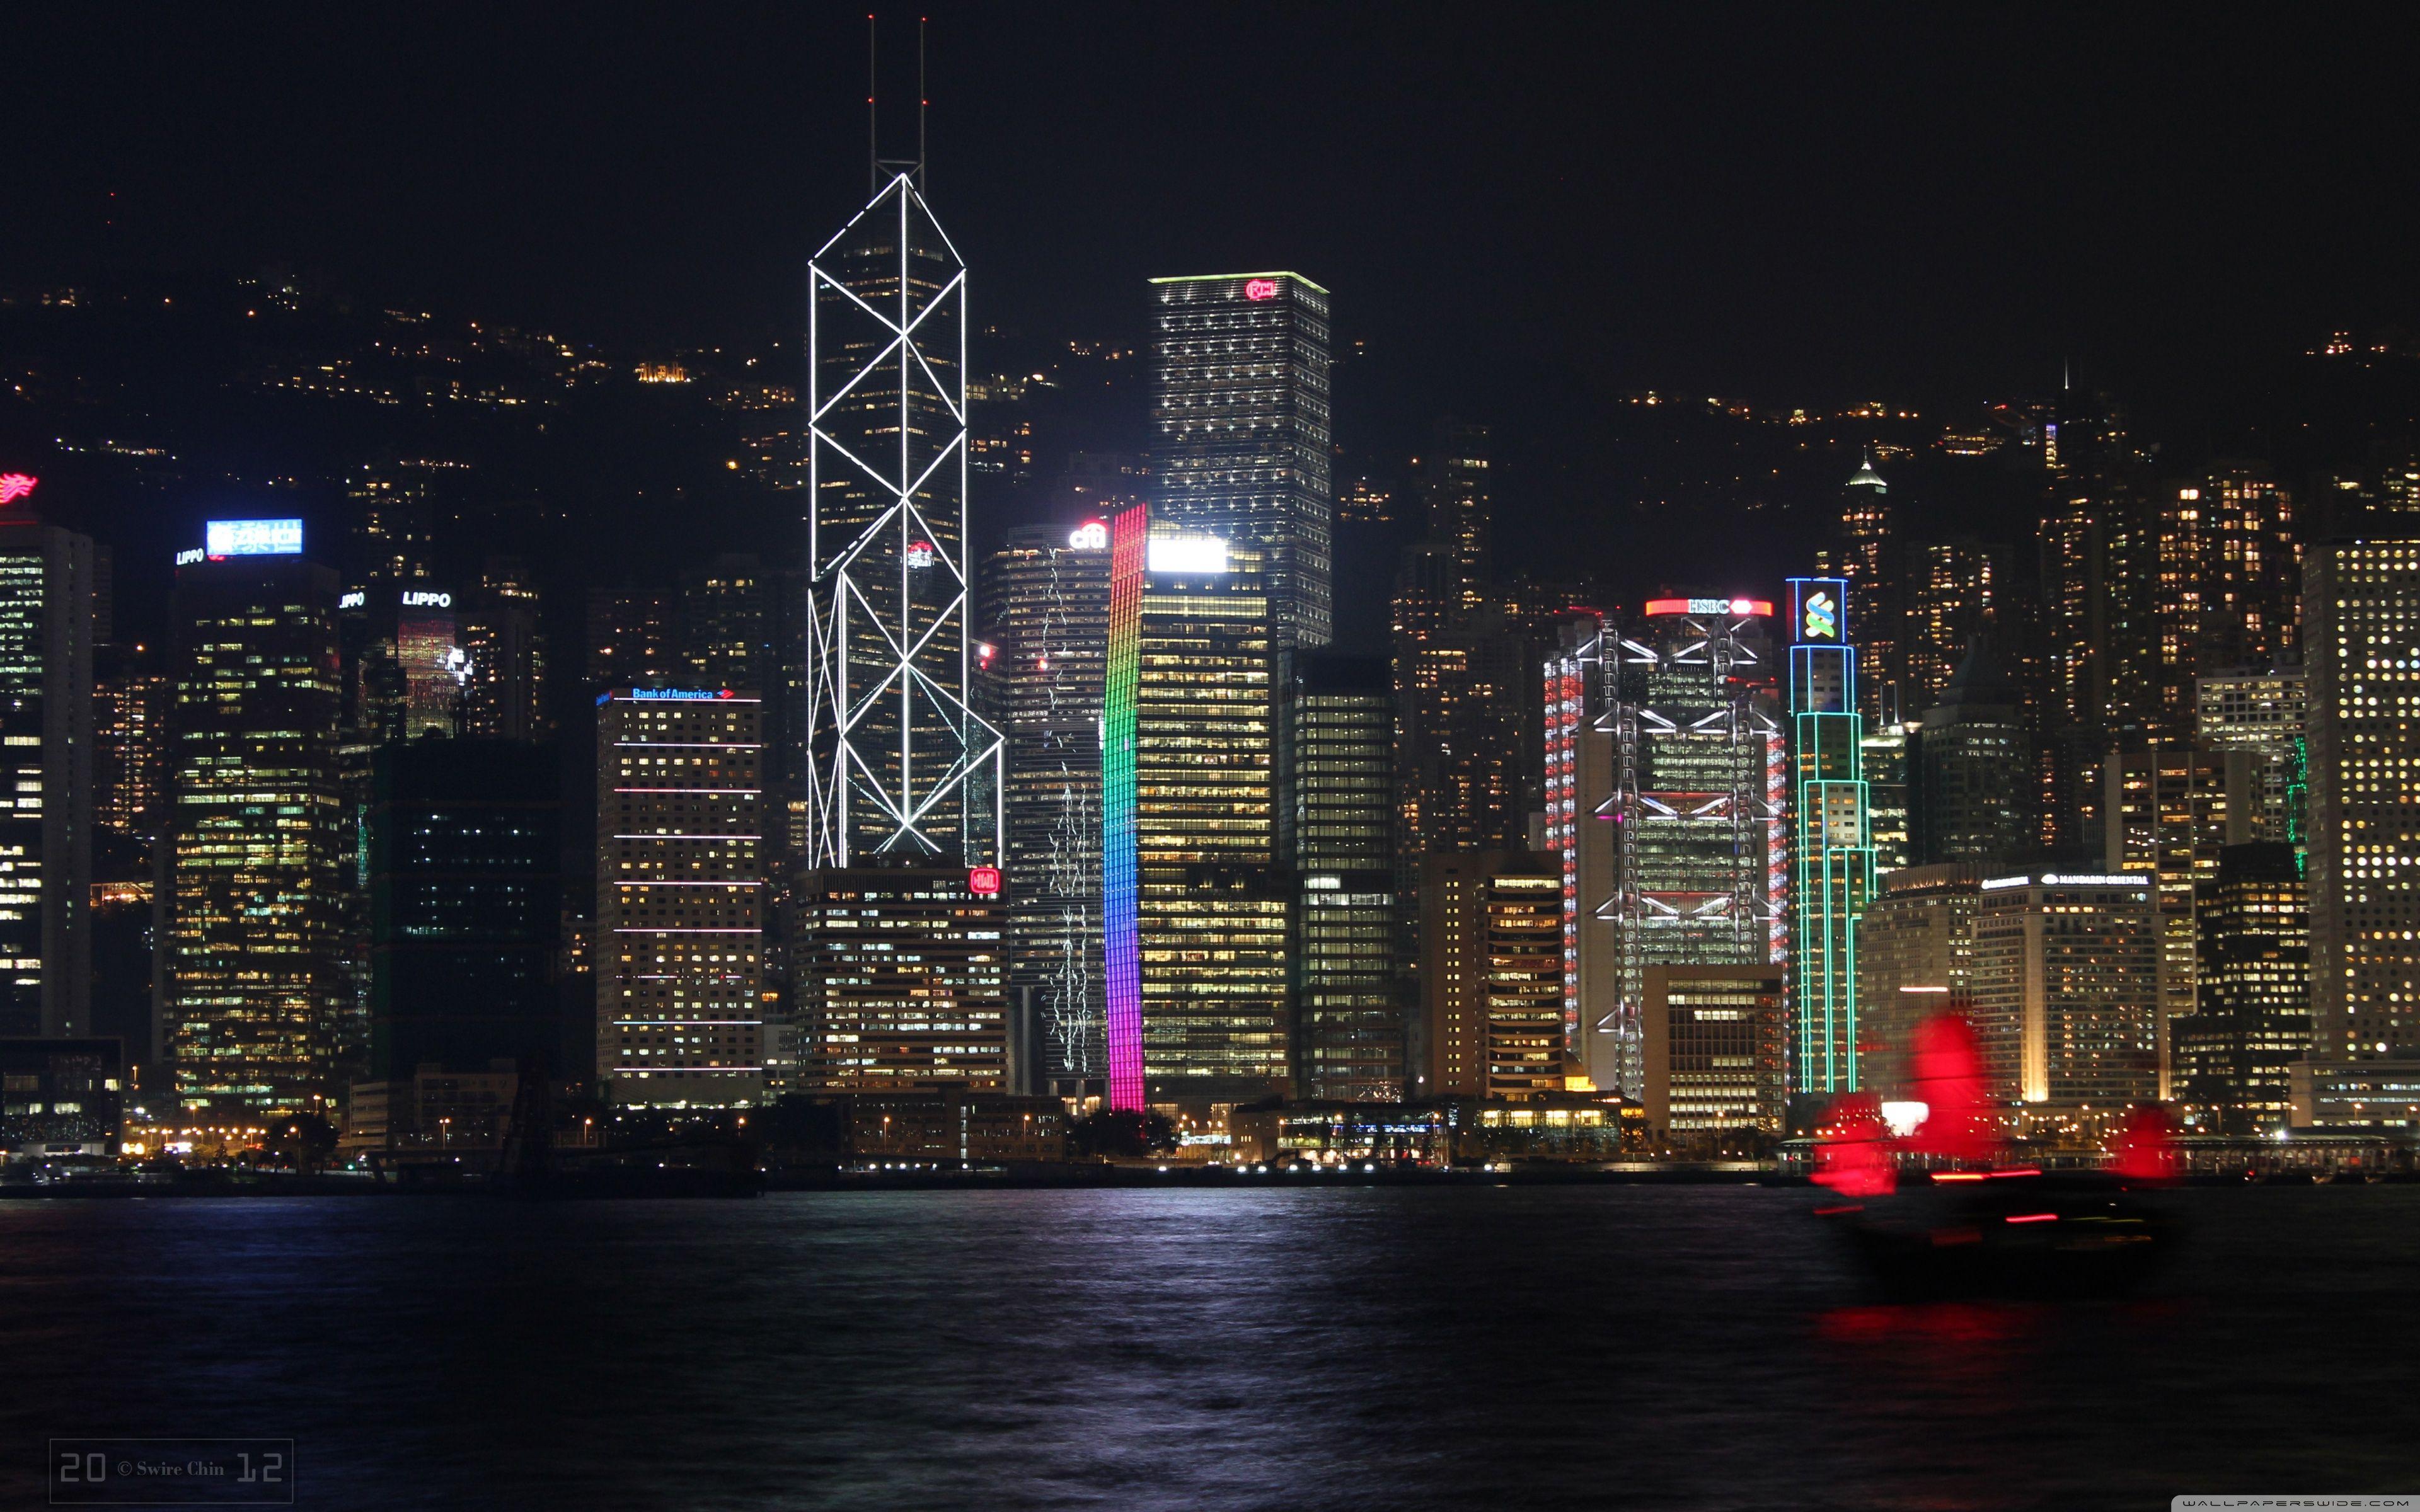 Hong Kong At Night Wallpapers - Top Free Hong Kong At Night Backgrounds